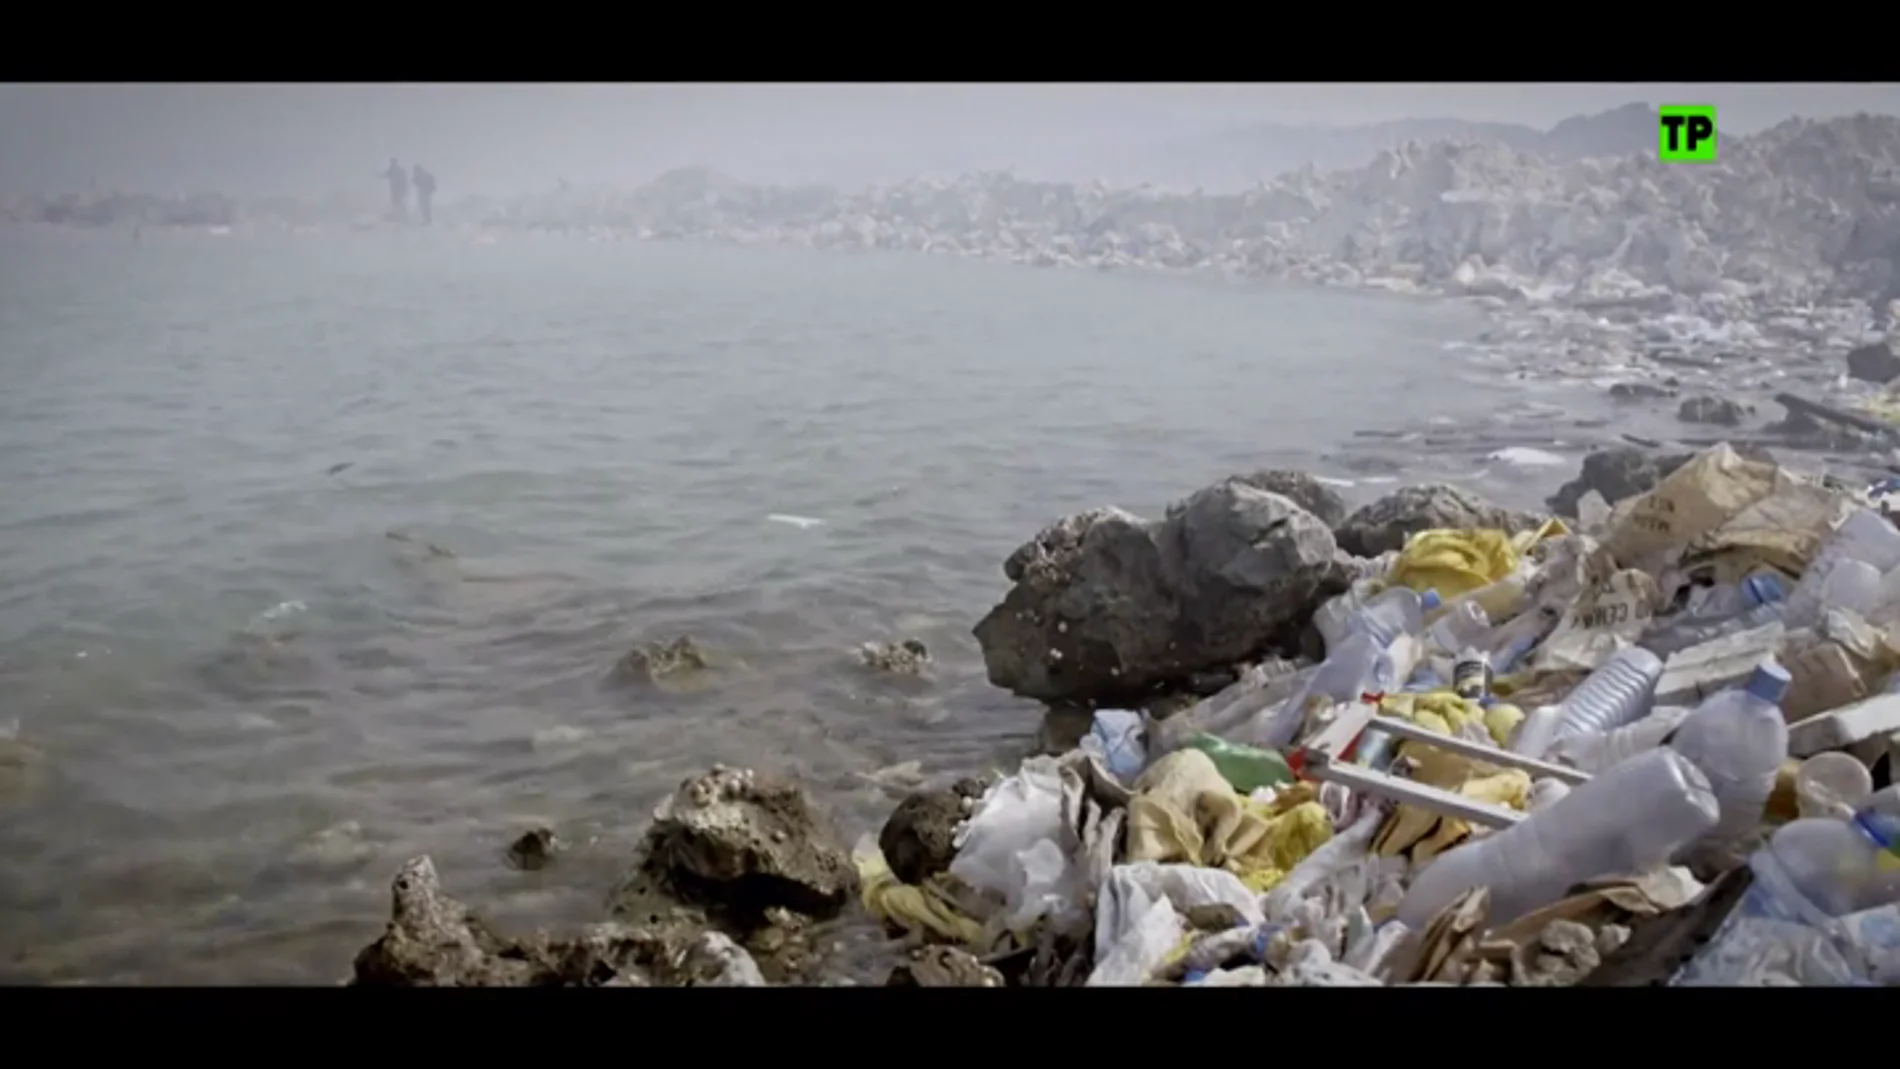 Vivir sin plástico: dos familias eliminan el plástico de su vida durante un mes